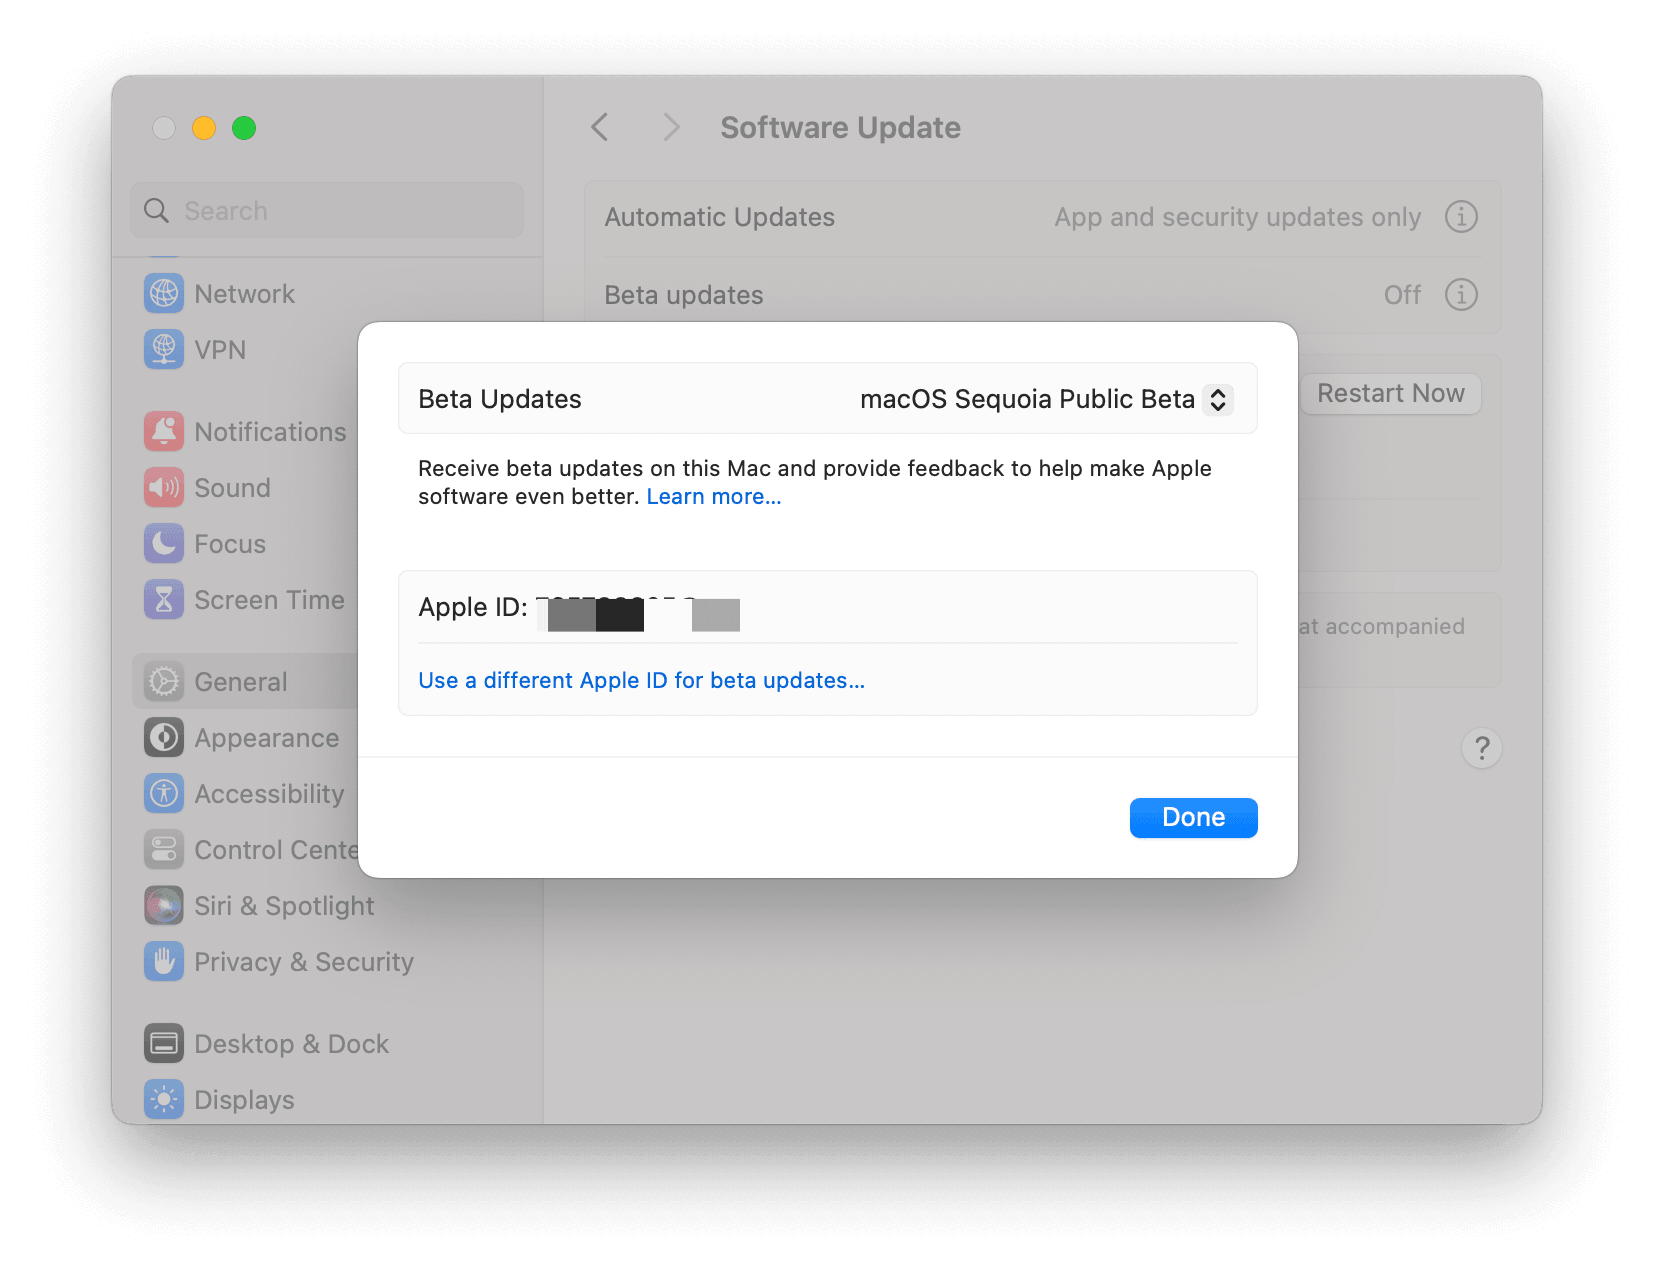 Check macOS Sequoia Public Beta Update